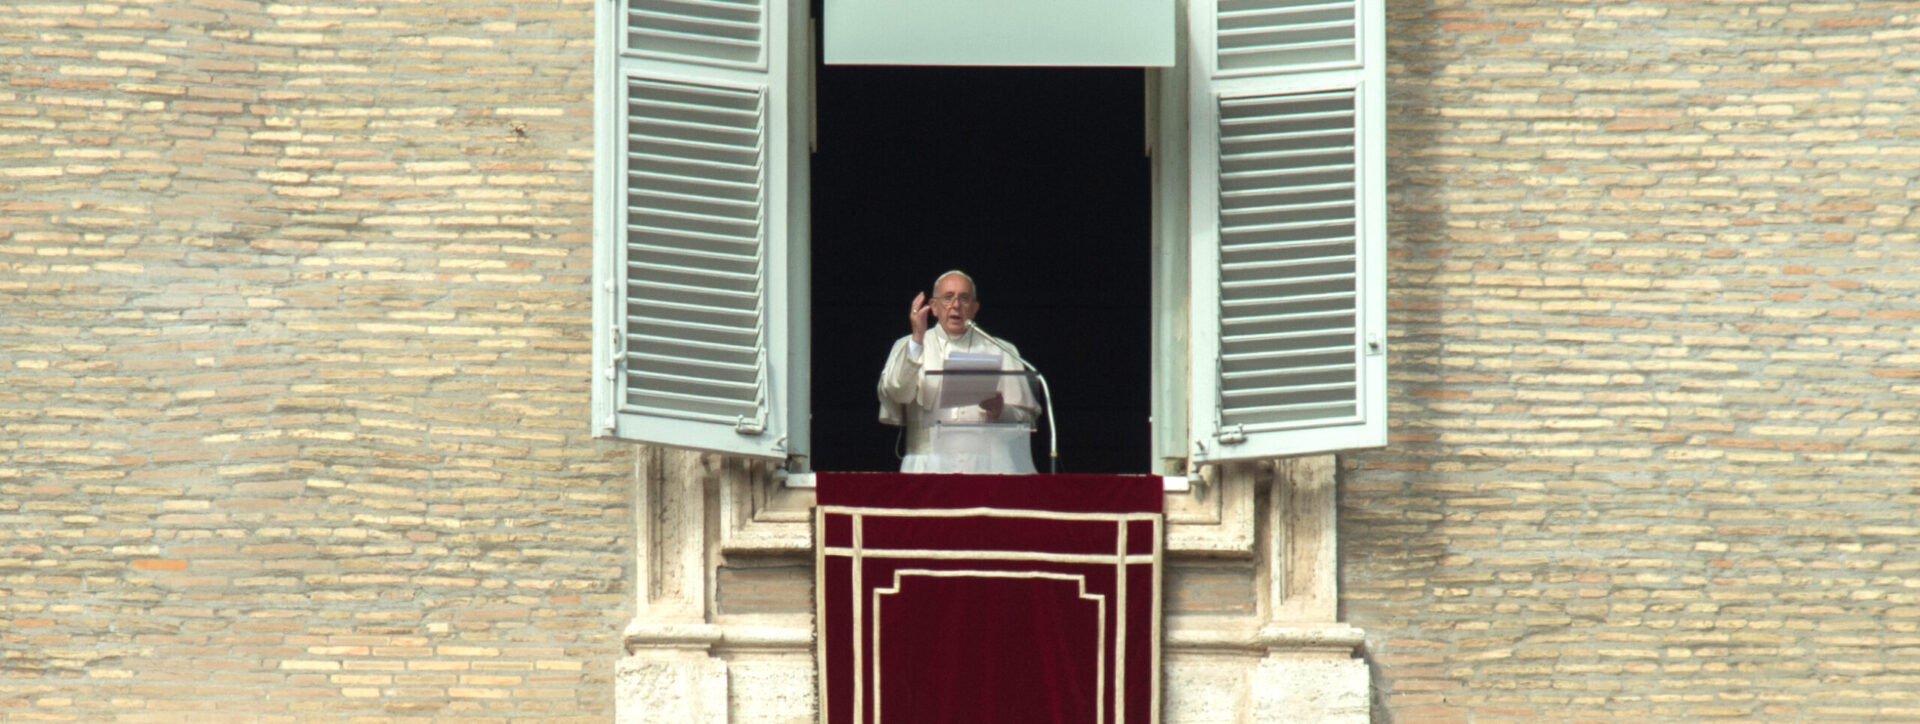 Le pape François a prononcé l'Angélus à la fenêtre des appartements pontificaux | photo d'illustration © Catholic Church in England and Wales/Flickr/CC BY-NC-ND 2.0